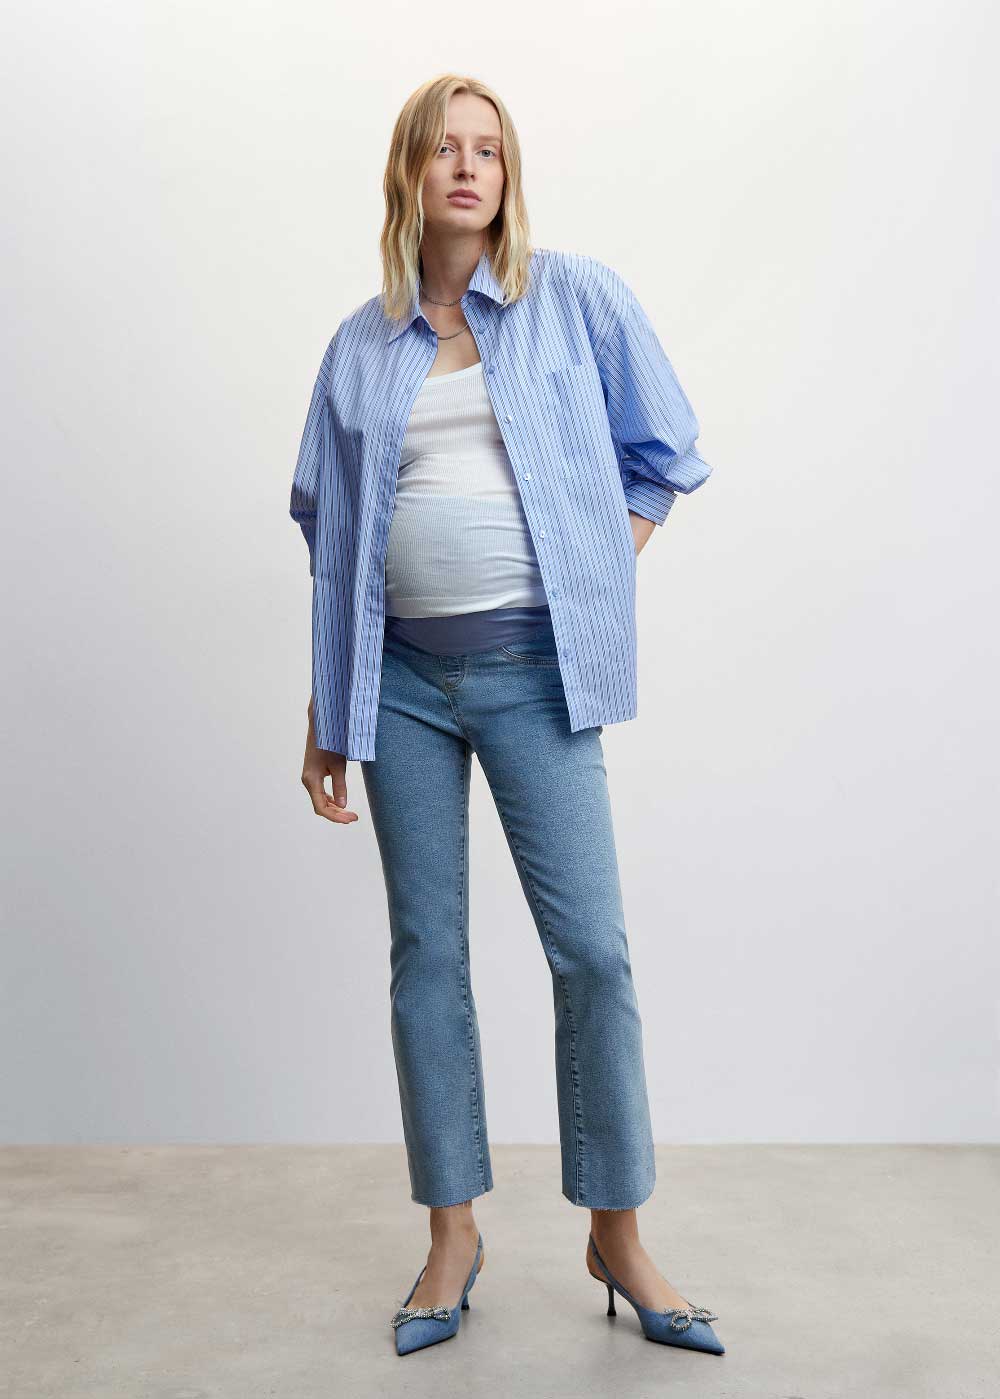 moda embarazadas tendencias coleccion mango maternity